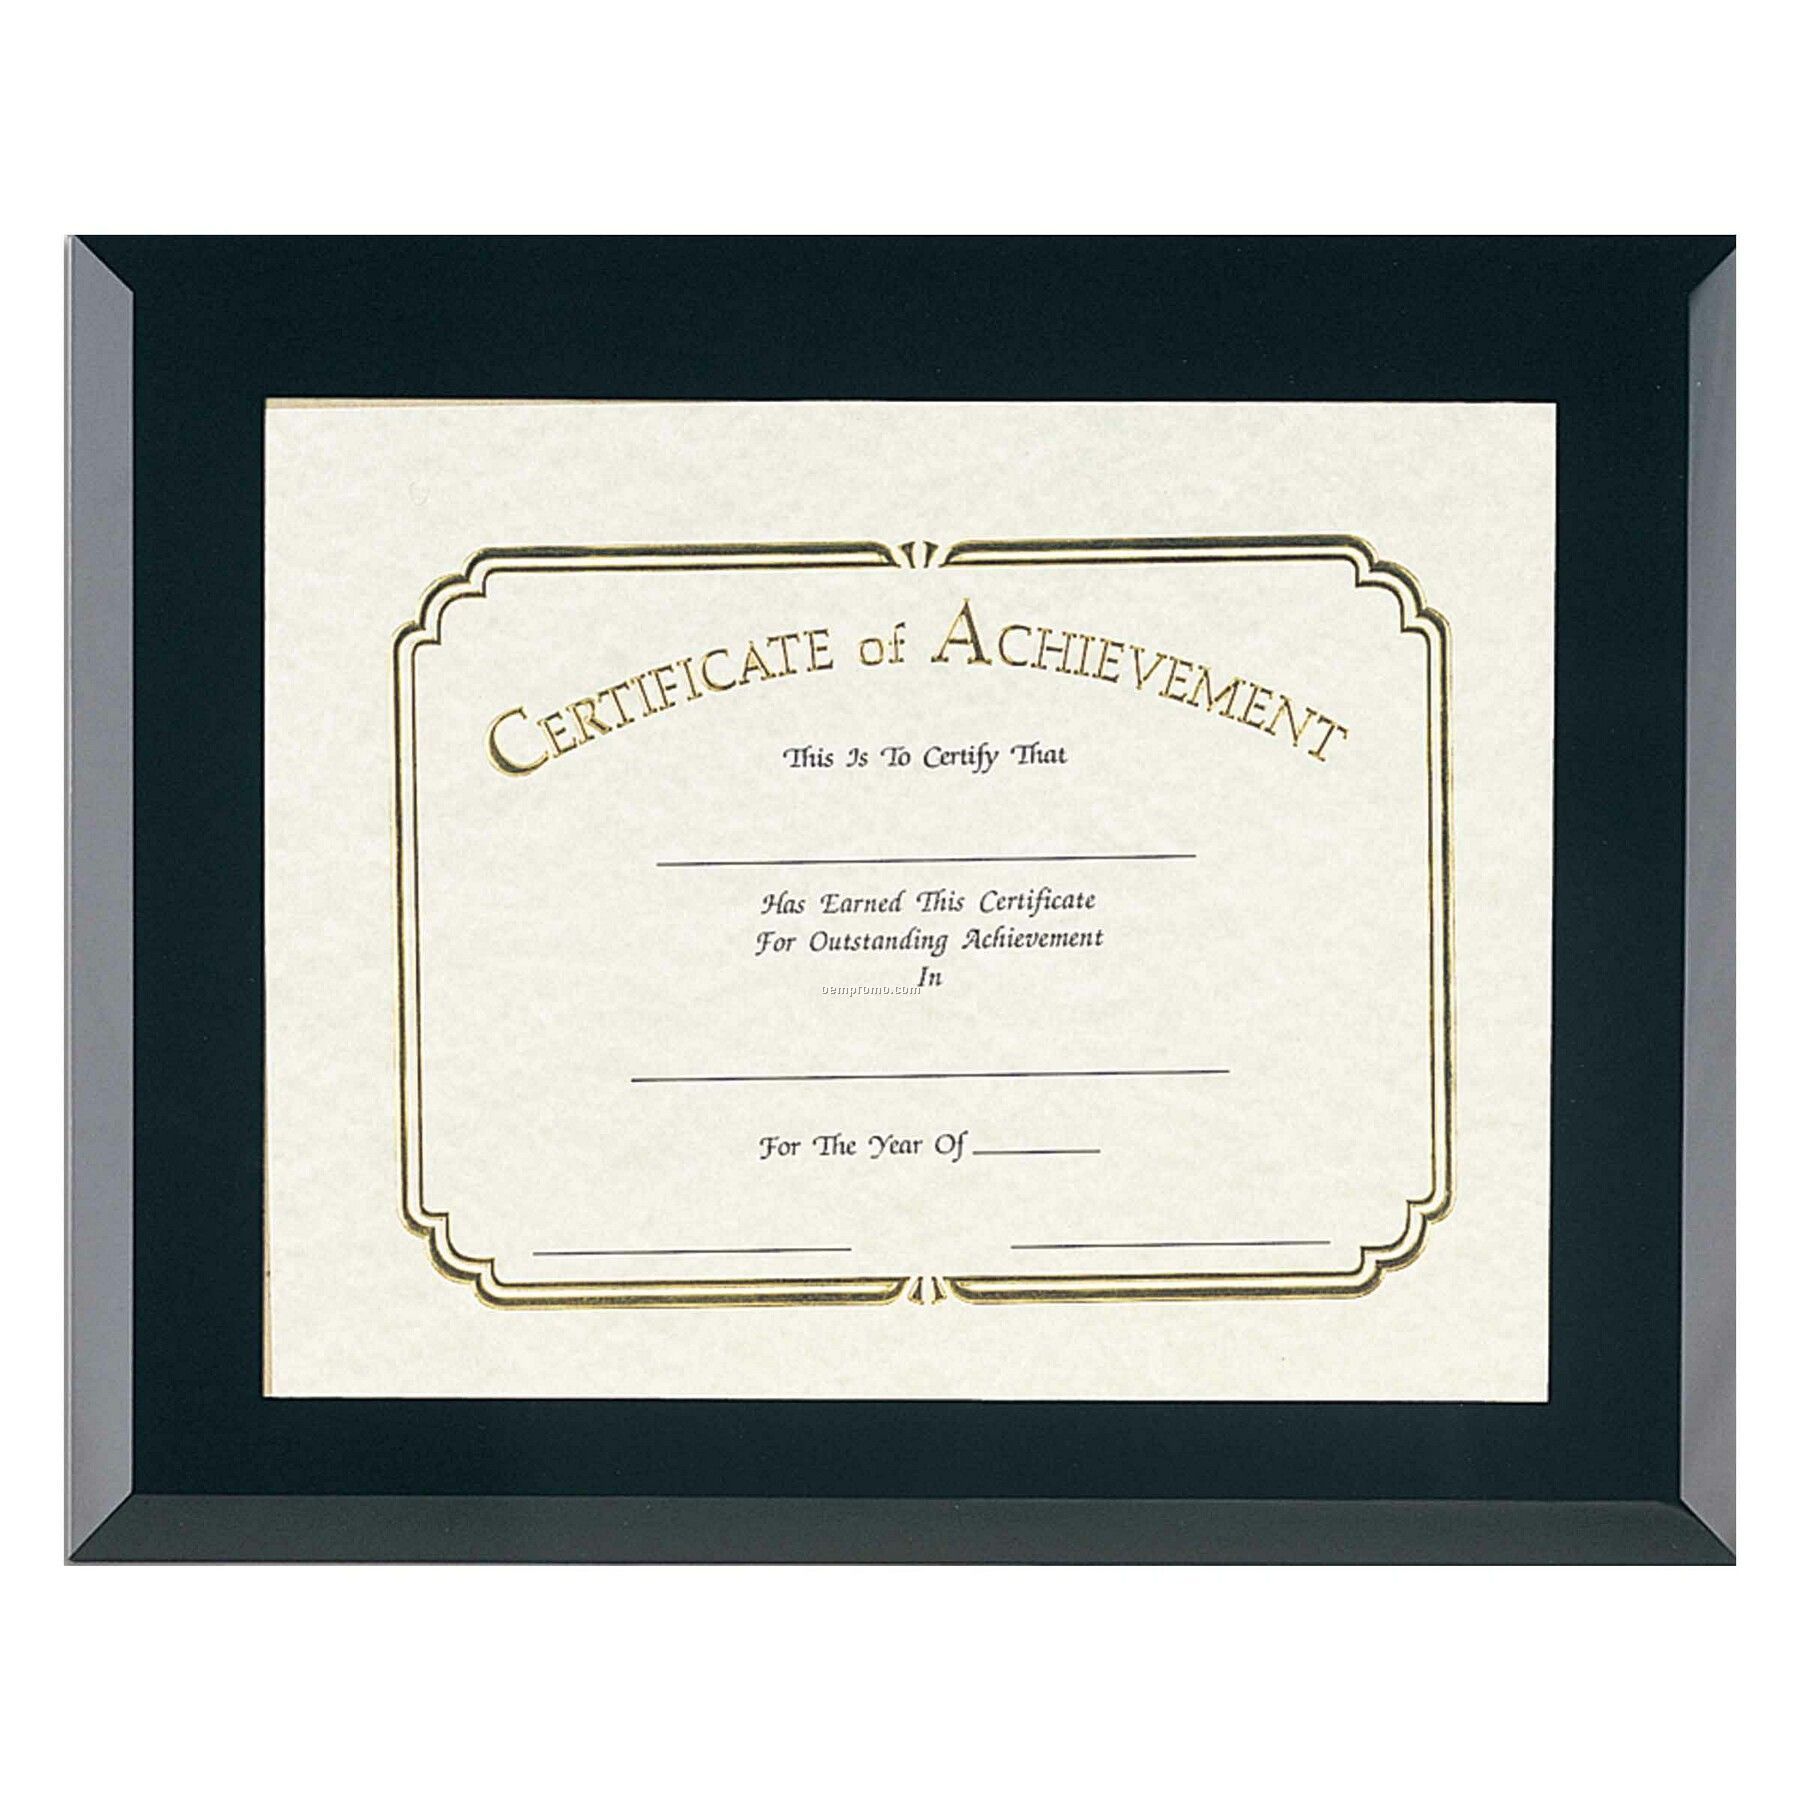 Black Glass Certificate Frame - 8-1/2x11 Certificate